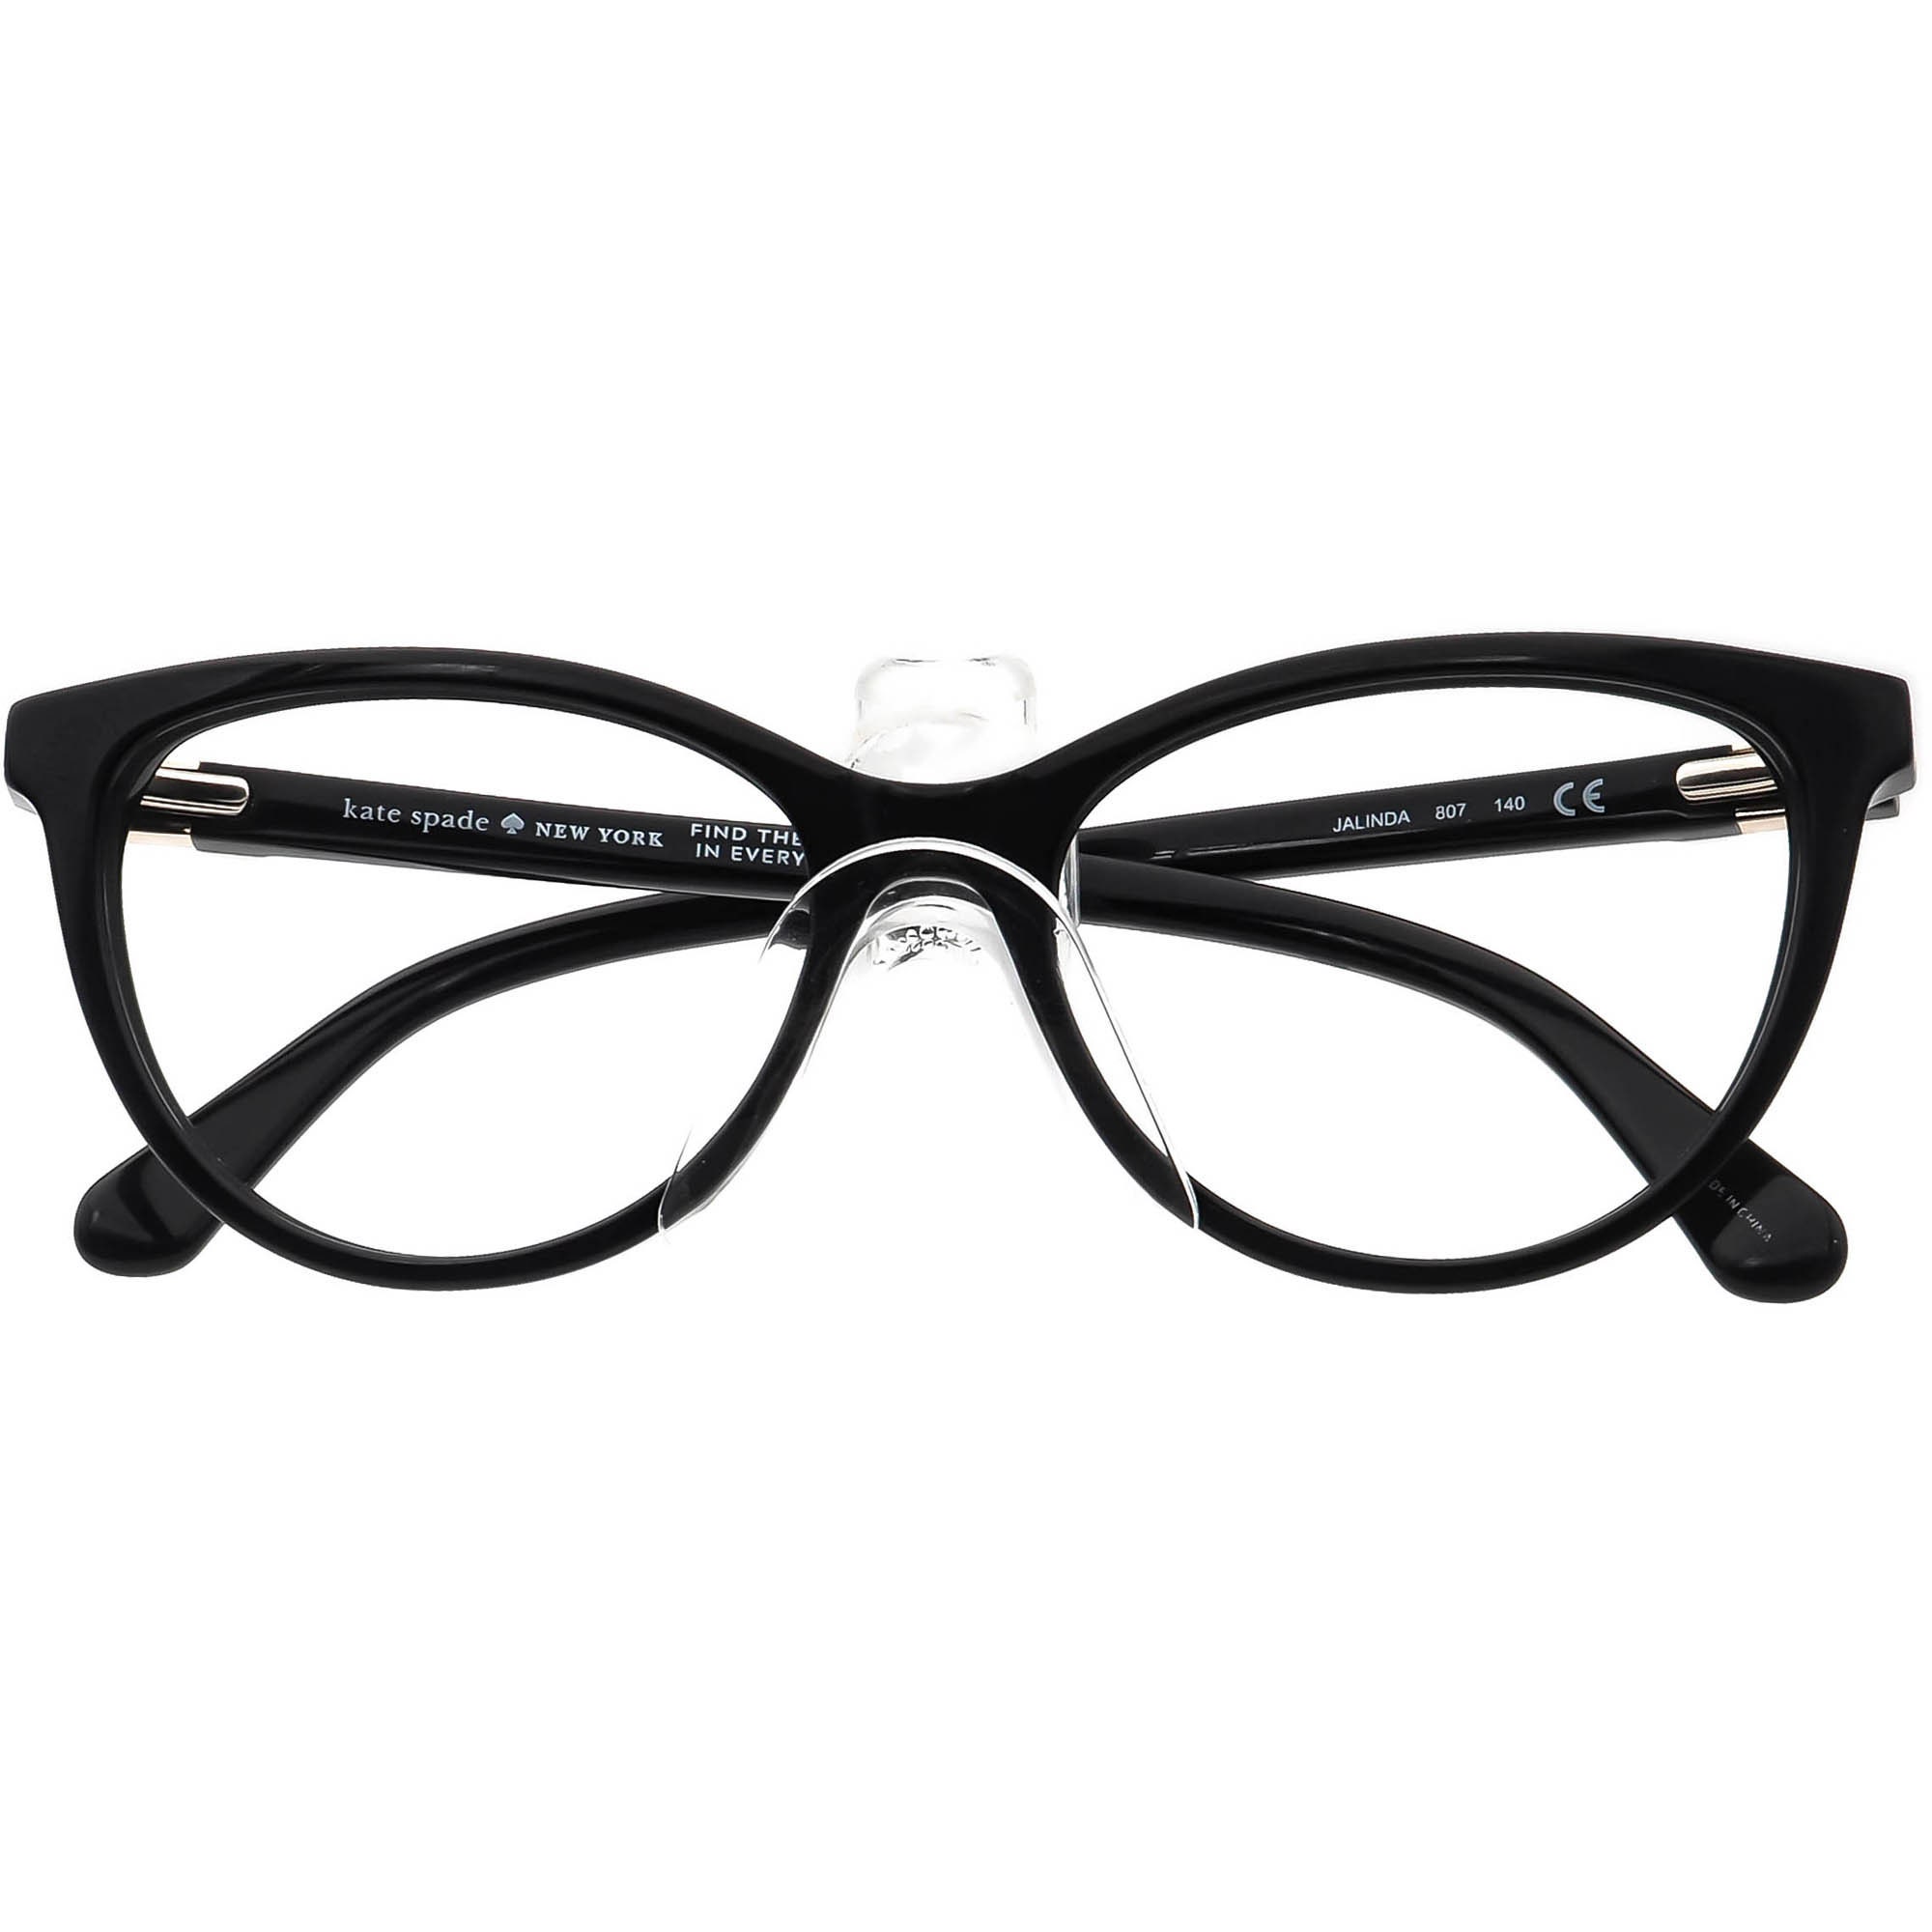 Buy Kate Spade Women's Eyeglasses Jalinda 807 Black Cat Eye Online in India  - Etsy